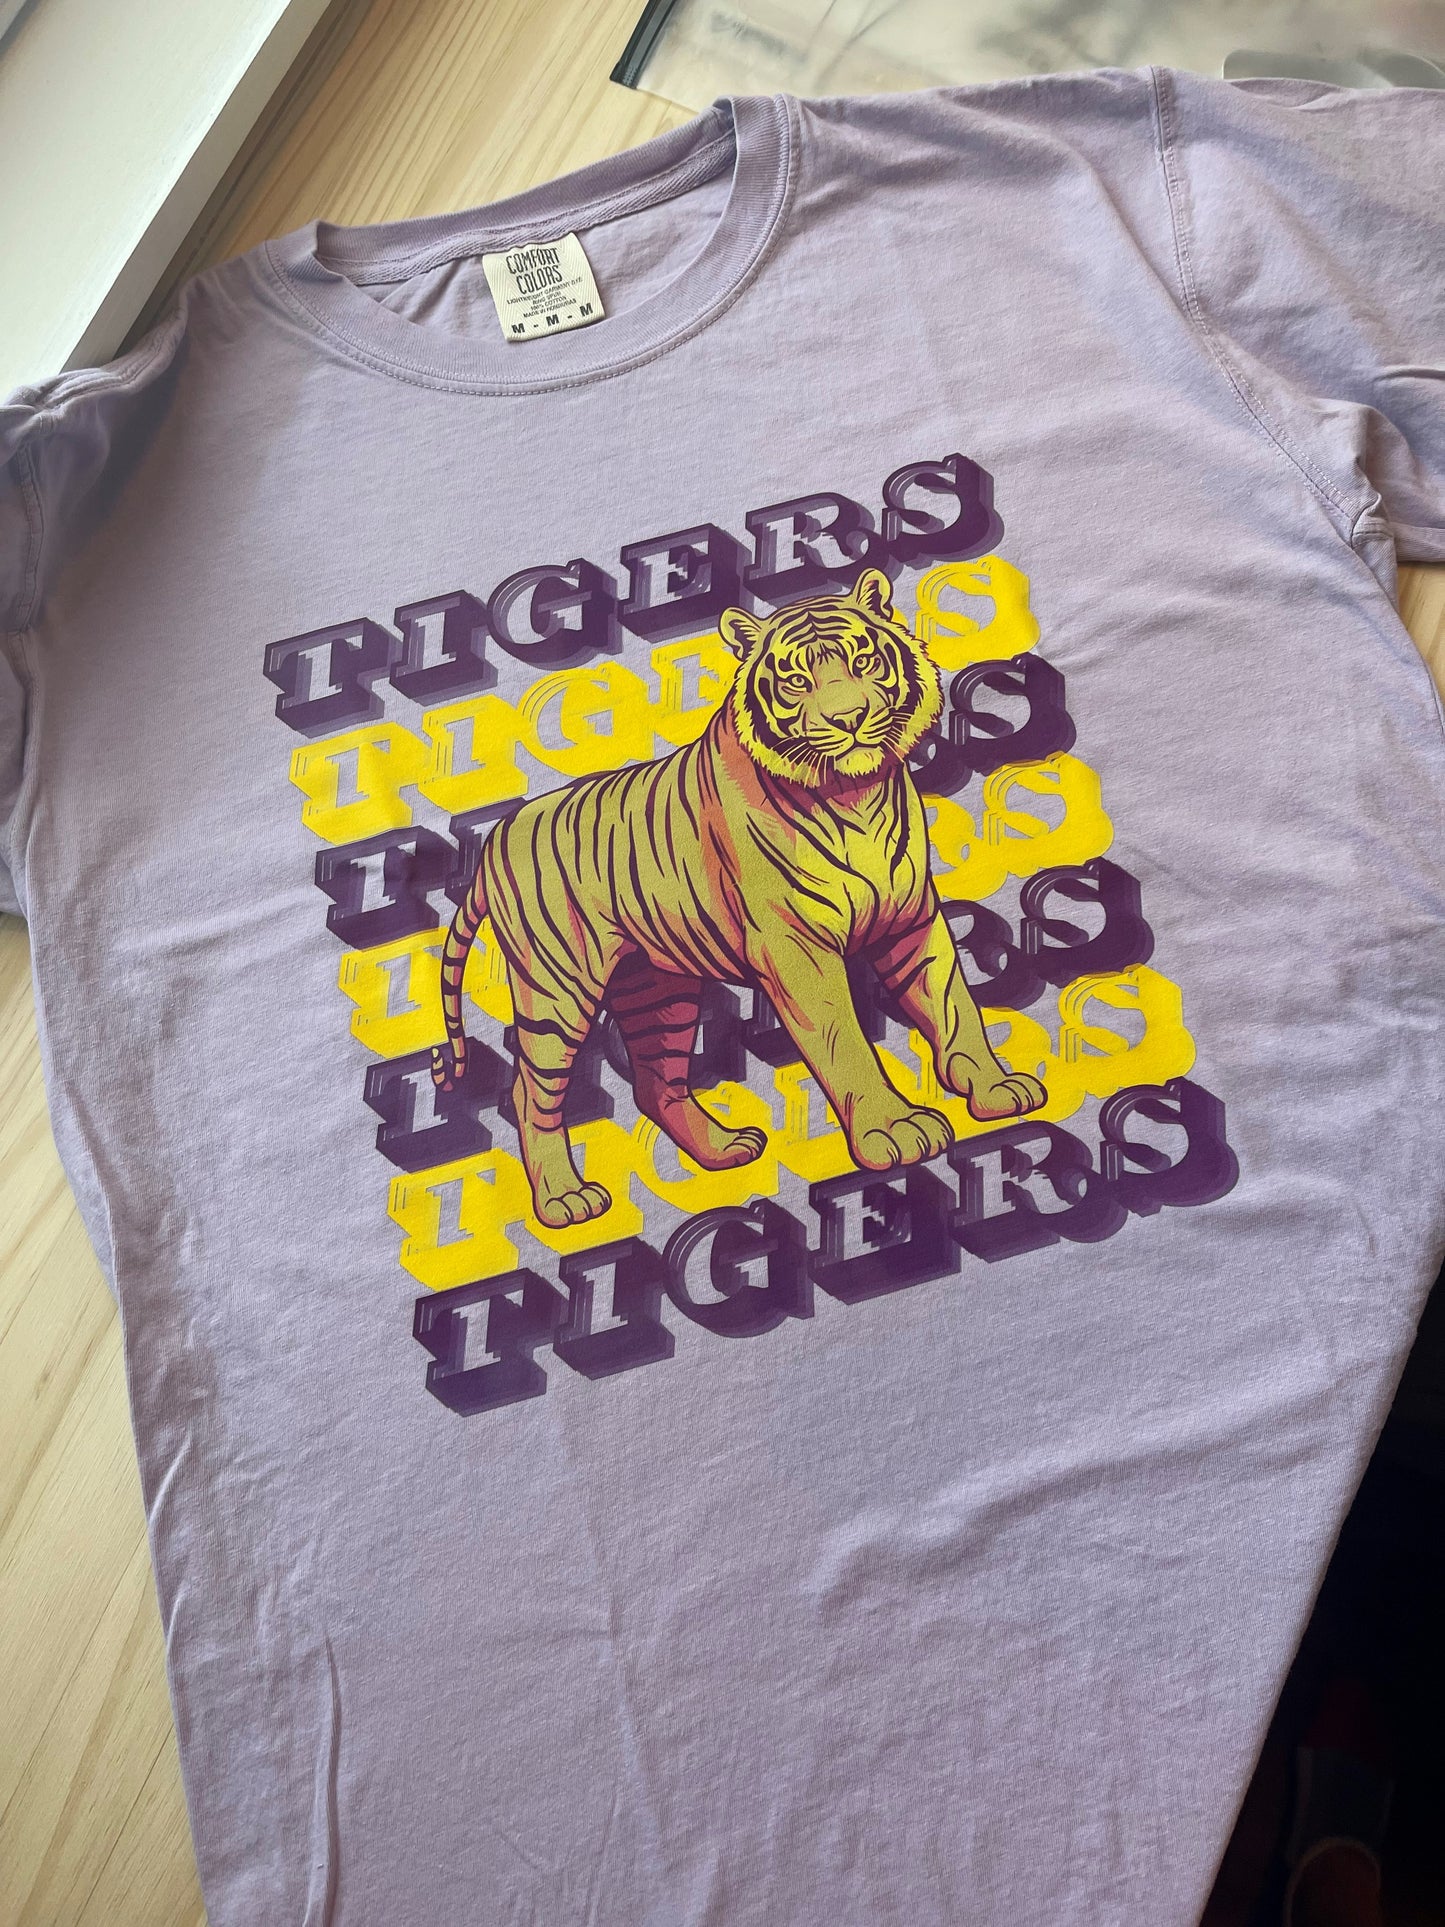 TIGERS TIGERS TIGERS T-Shirt